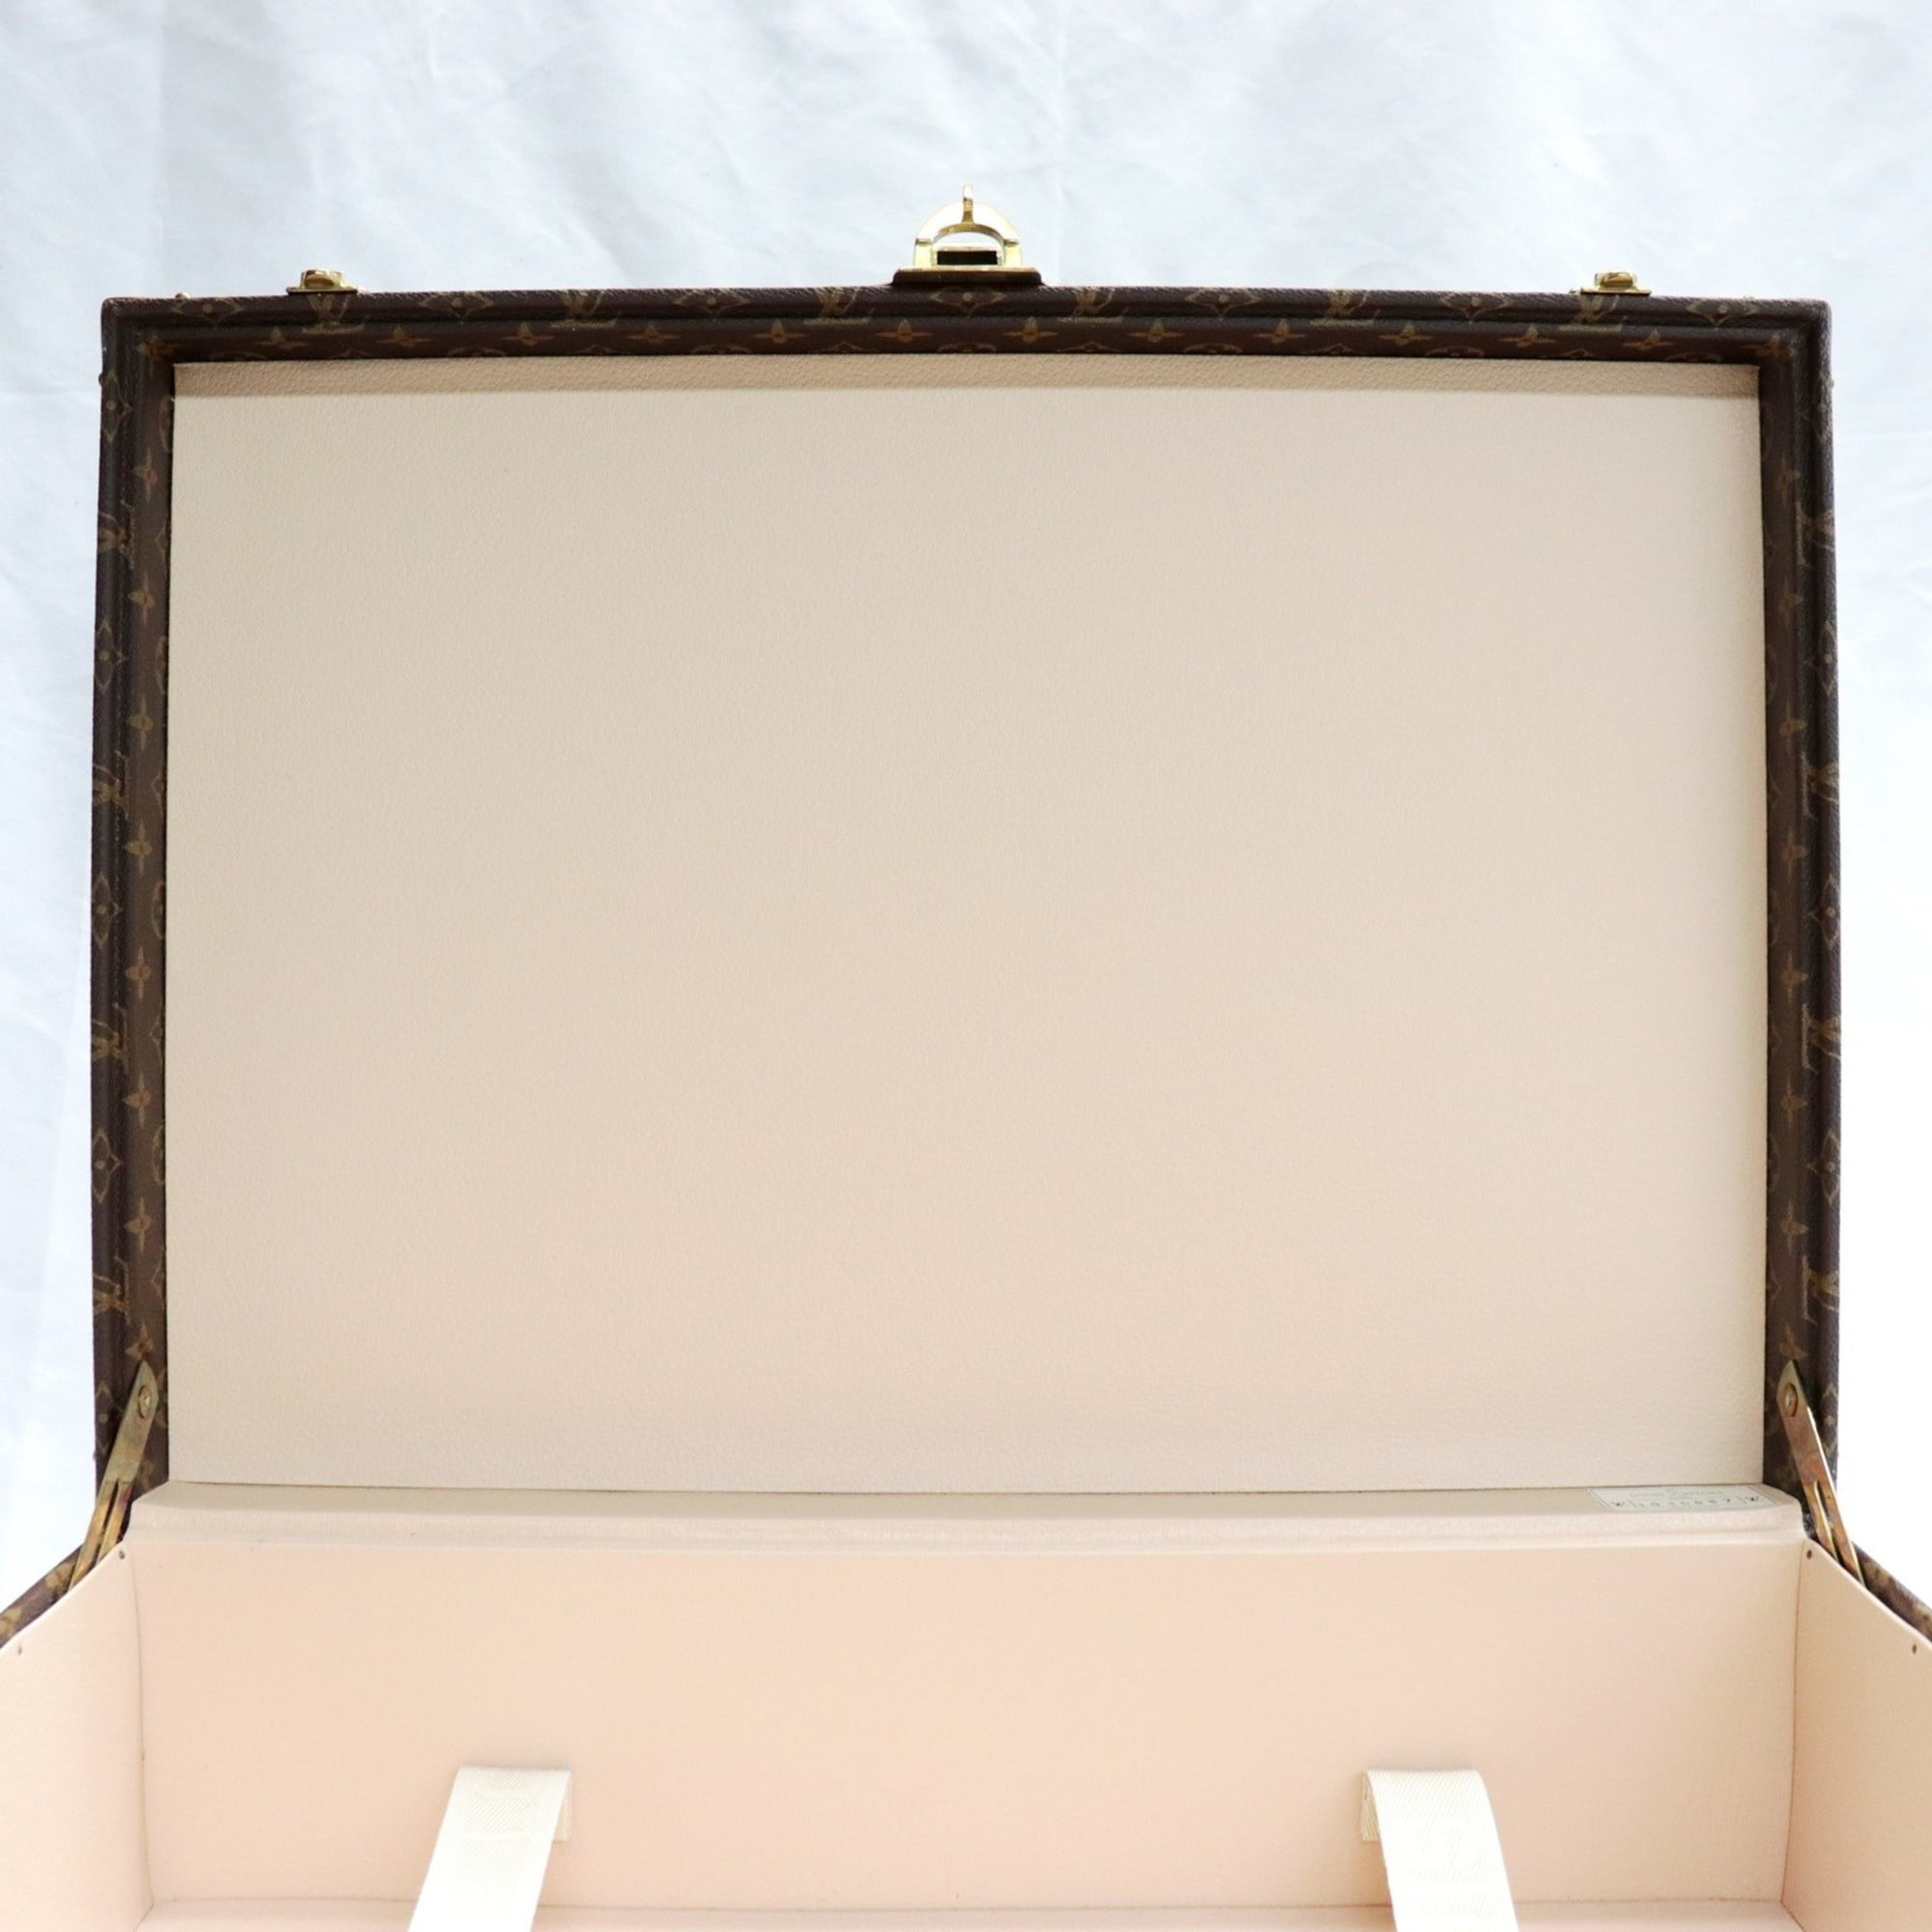 Authenticated used Louis Vuitton Bisten 55 Monogram Trunk Hard Case Attache Bag Brown M21327, Women's, Size: (HxWxD): 39cm x 55cm x 18cm / 15.35'' x